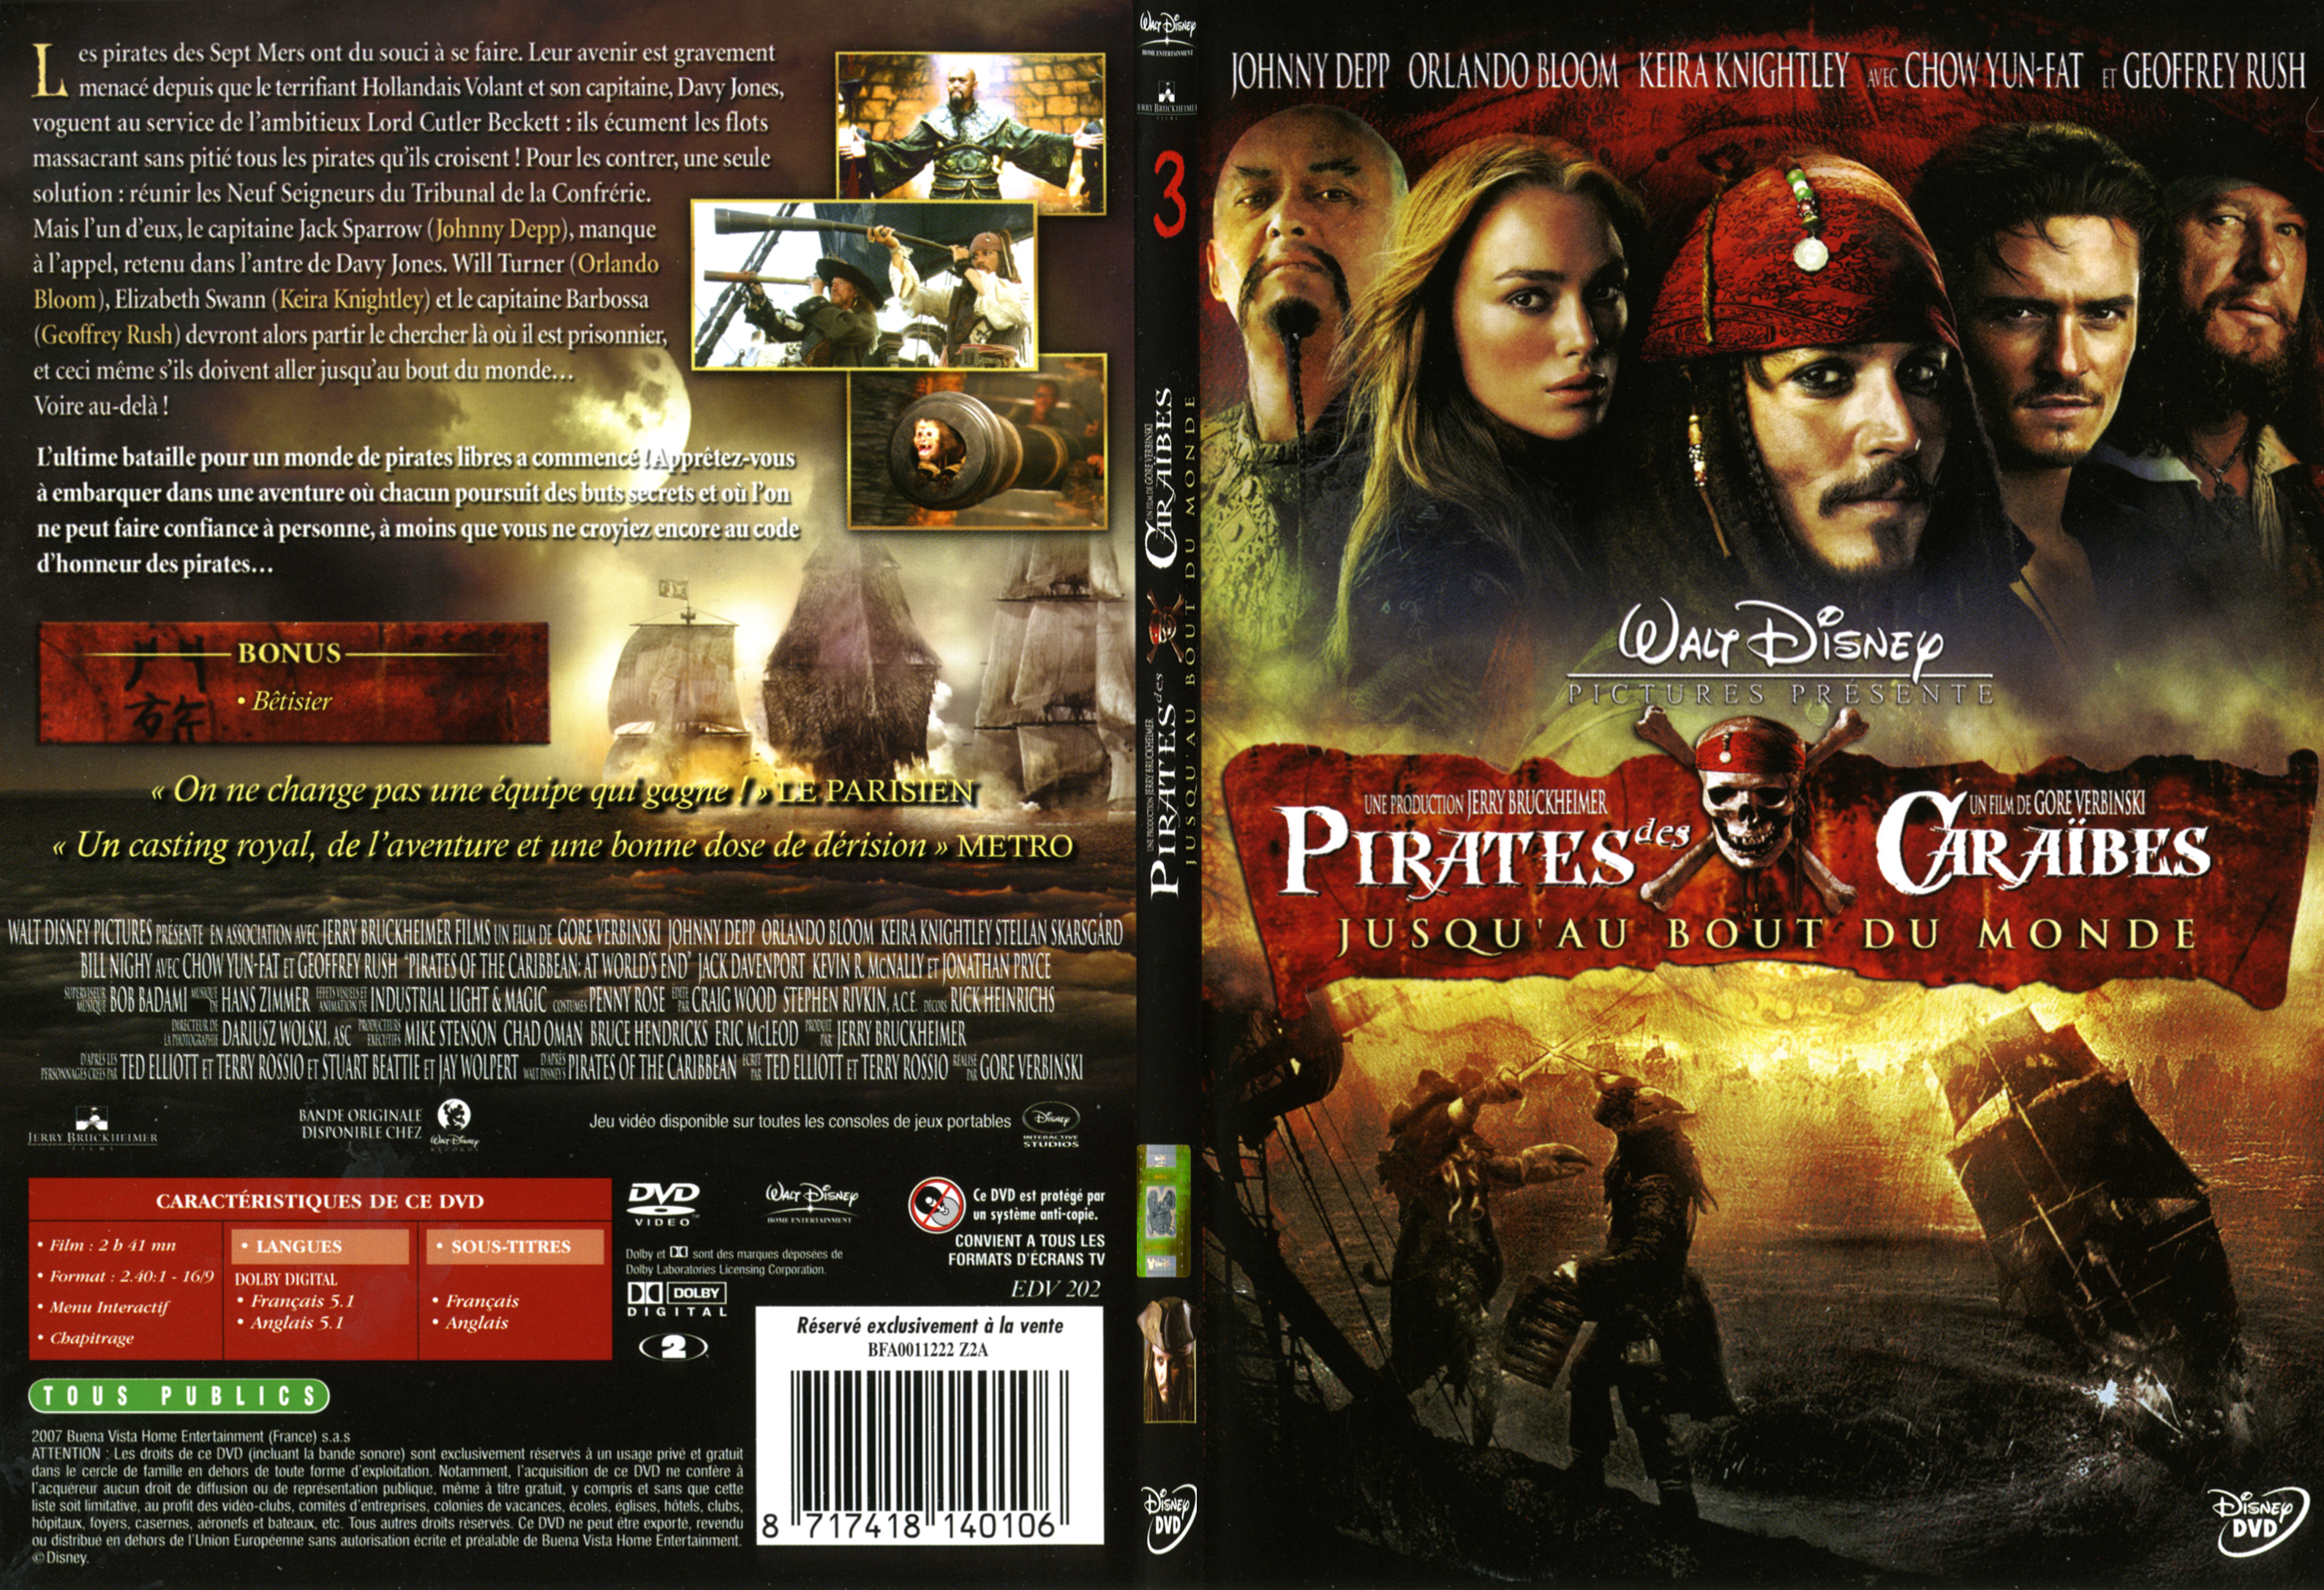 Jaquette DVD Pirates des Caraibes 3 - SLIM